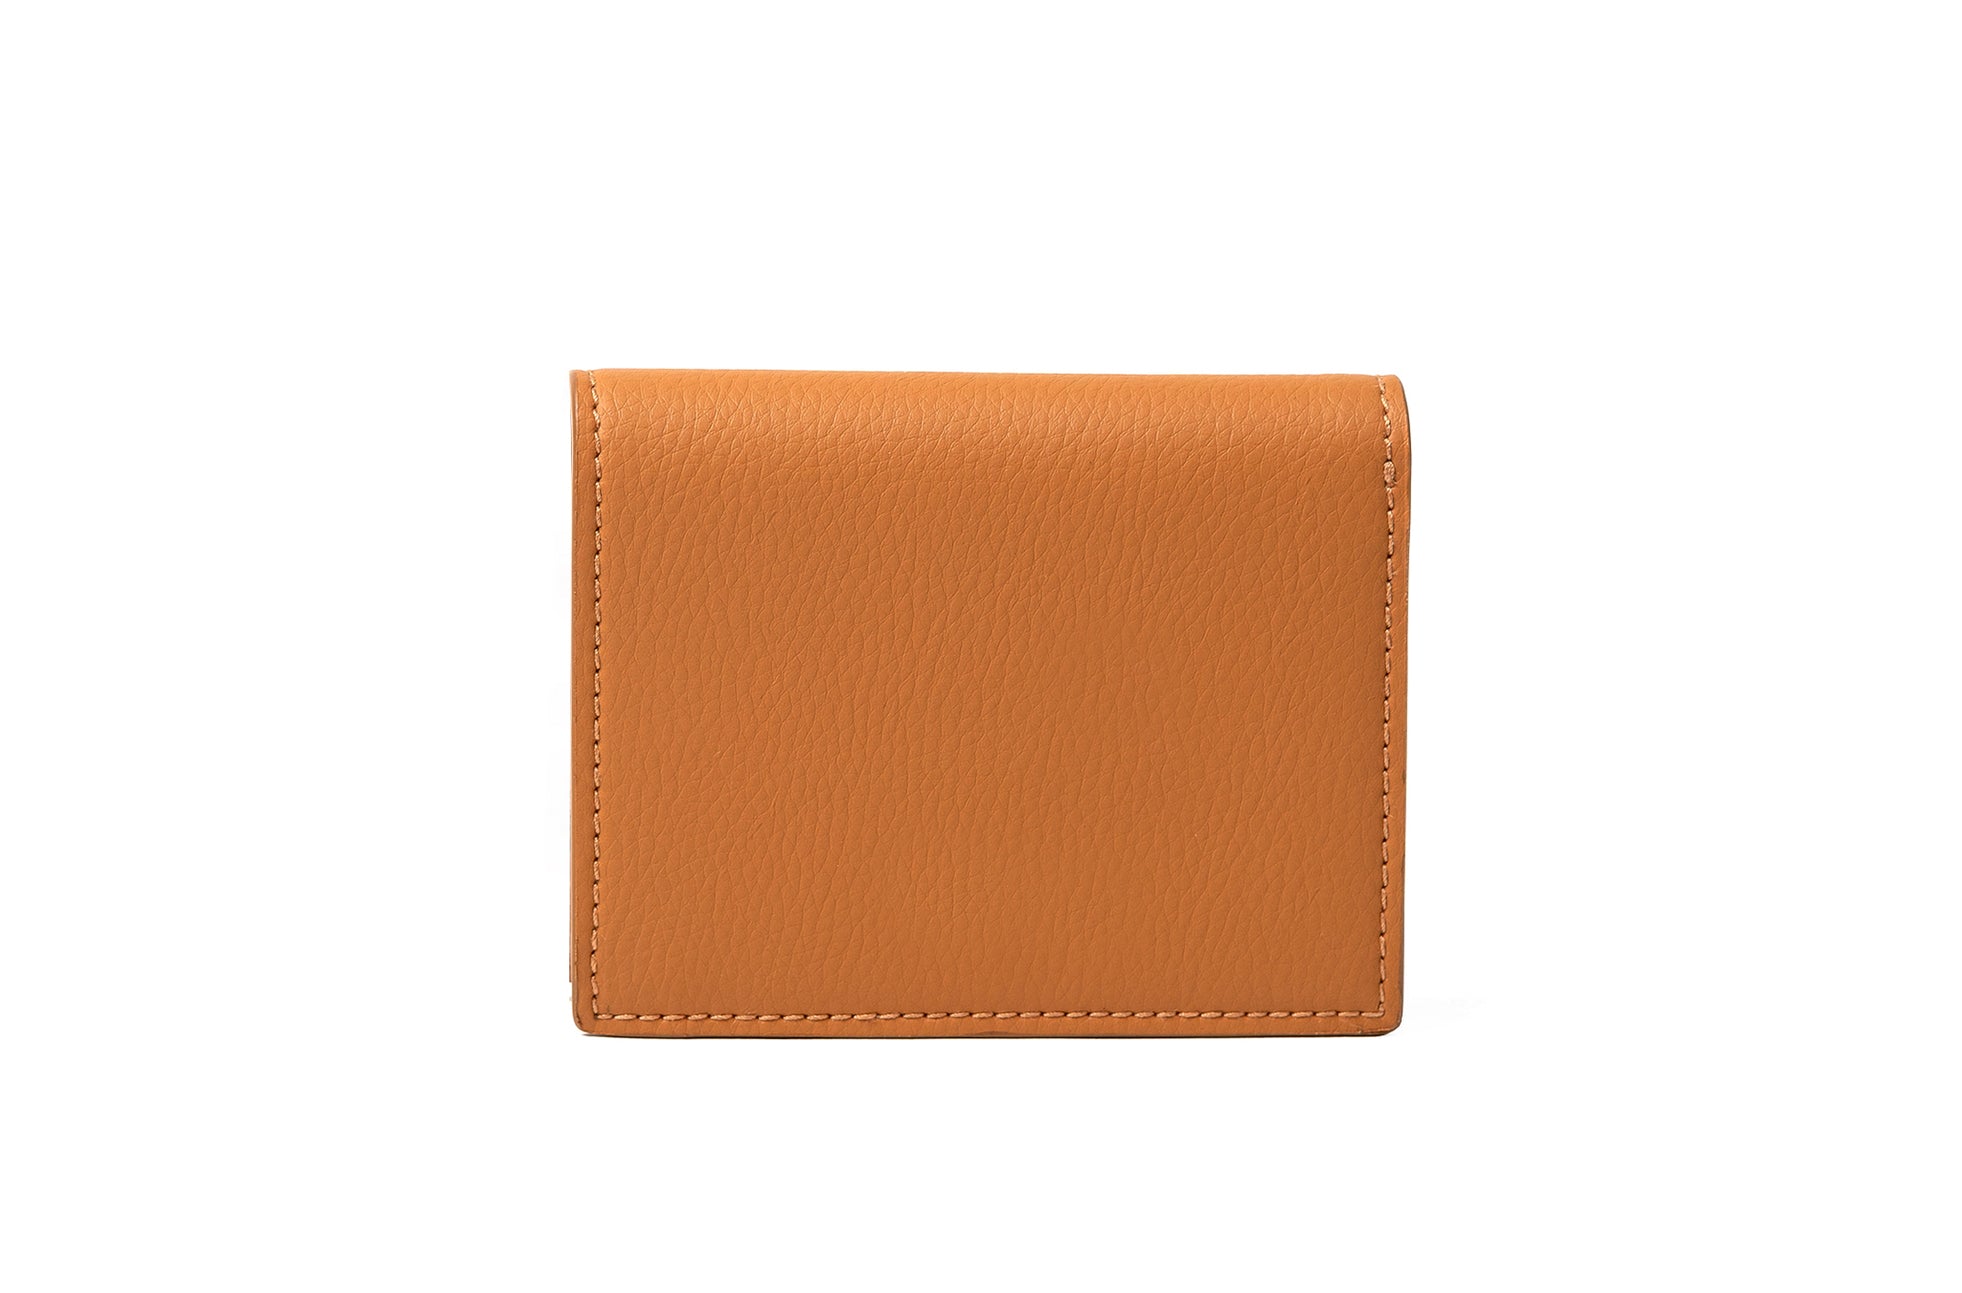 The Fold Wallet in Technik-Leather in Caramel image 3